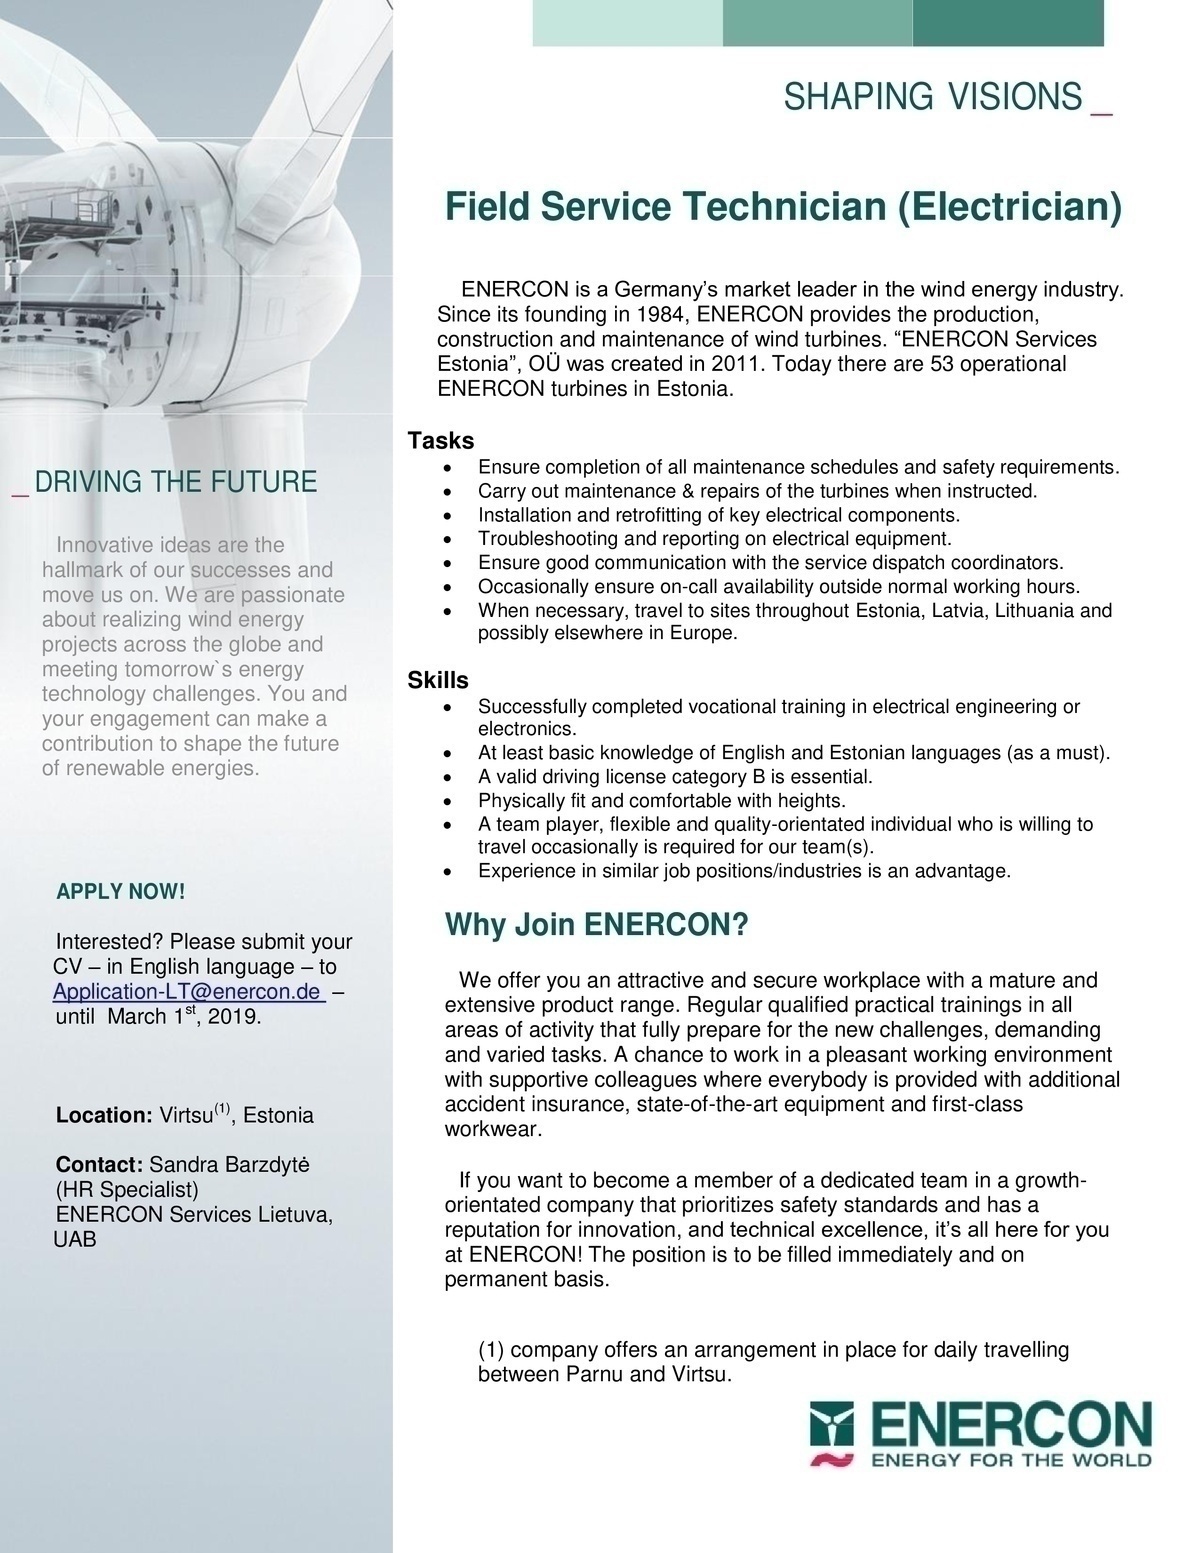 ENERCON SERVICES ESTONIA OÜ Field Service Technician (Electrician) in Virtsu